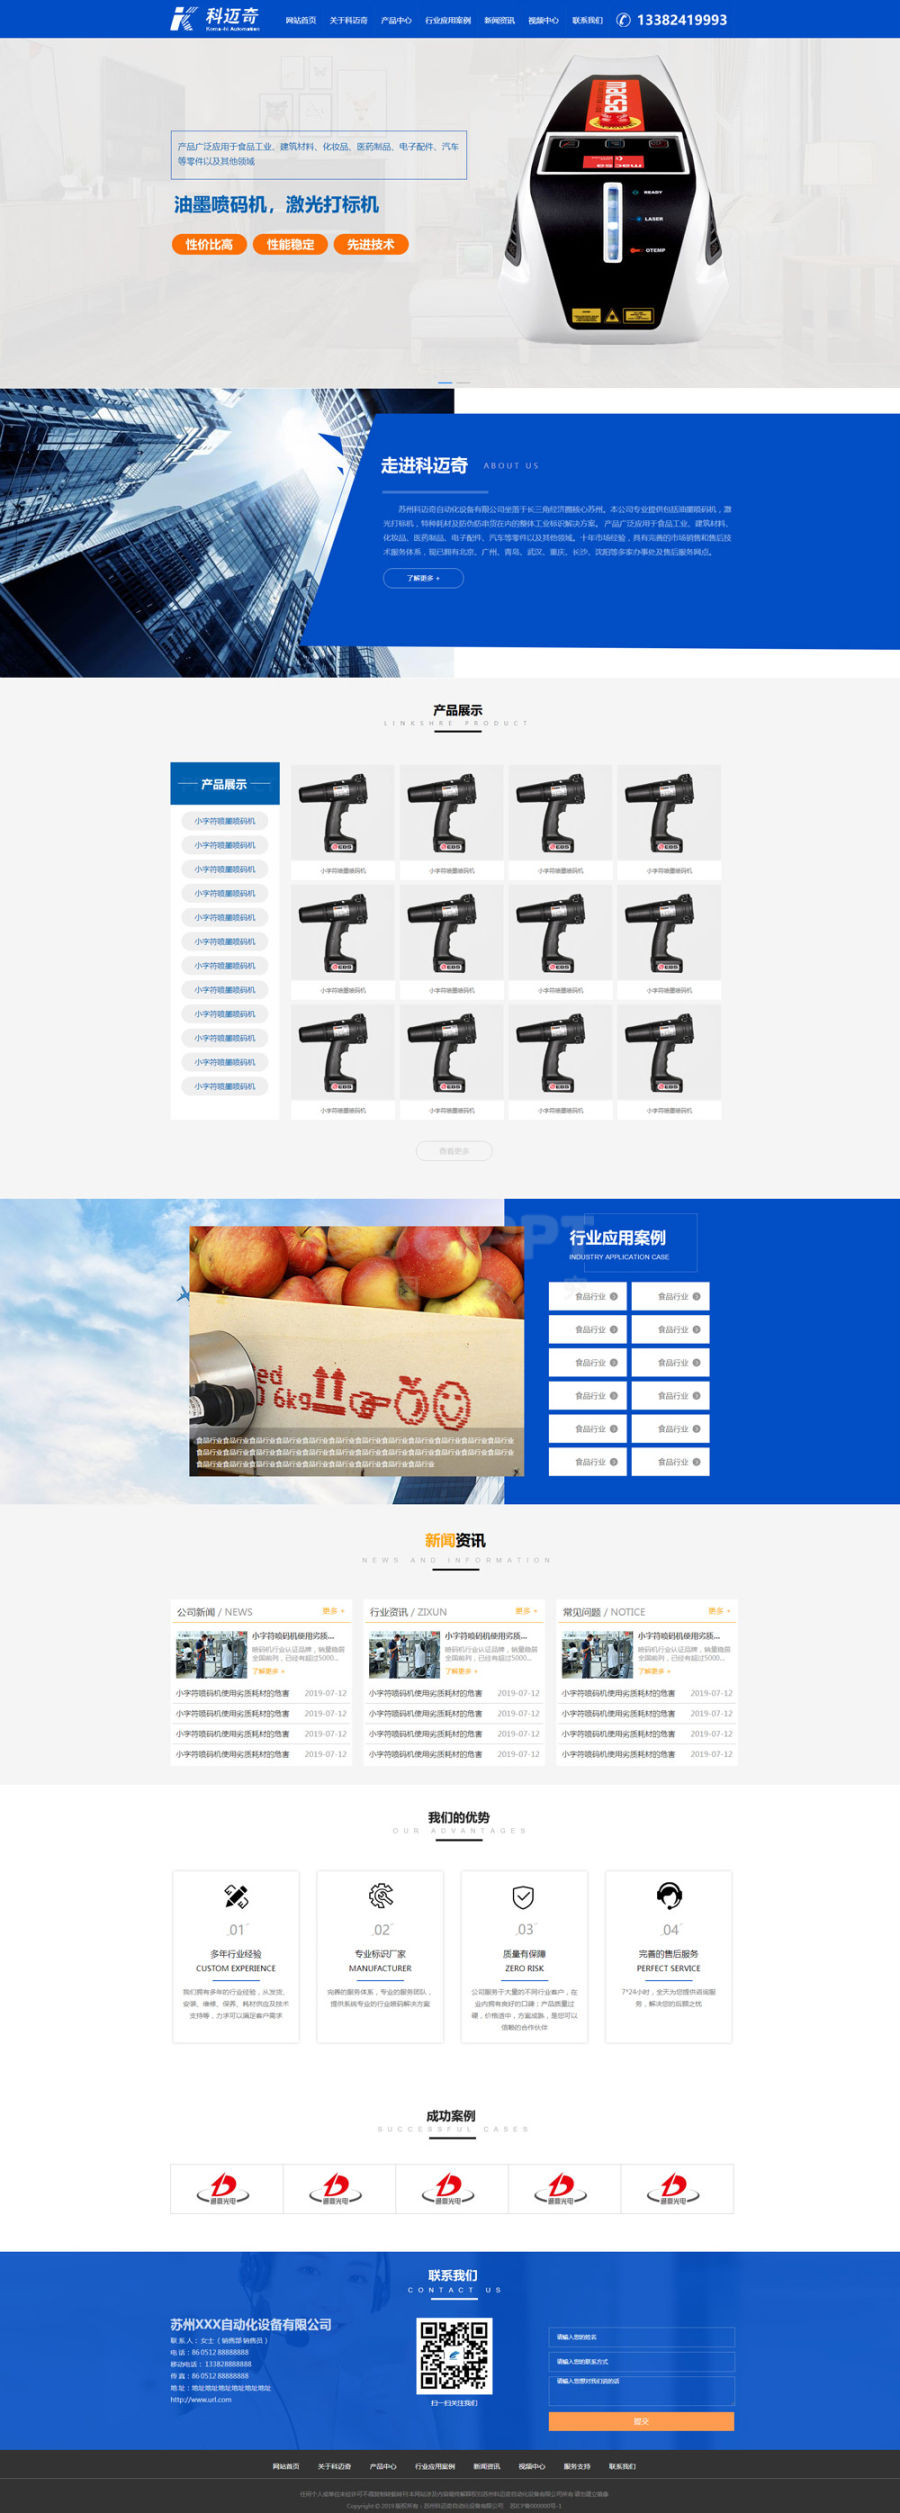 蓝色的喷墨喷码机自动化设备公司网站模板html